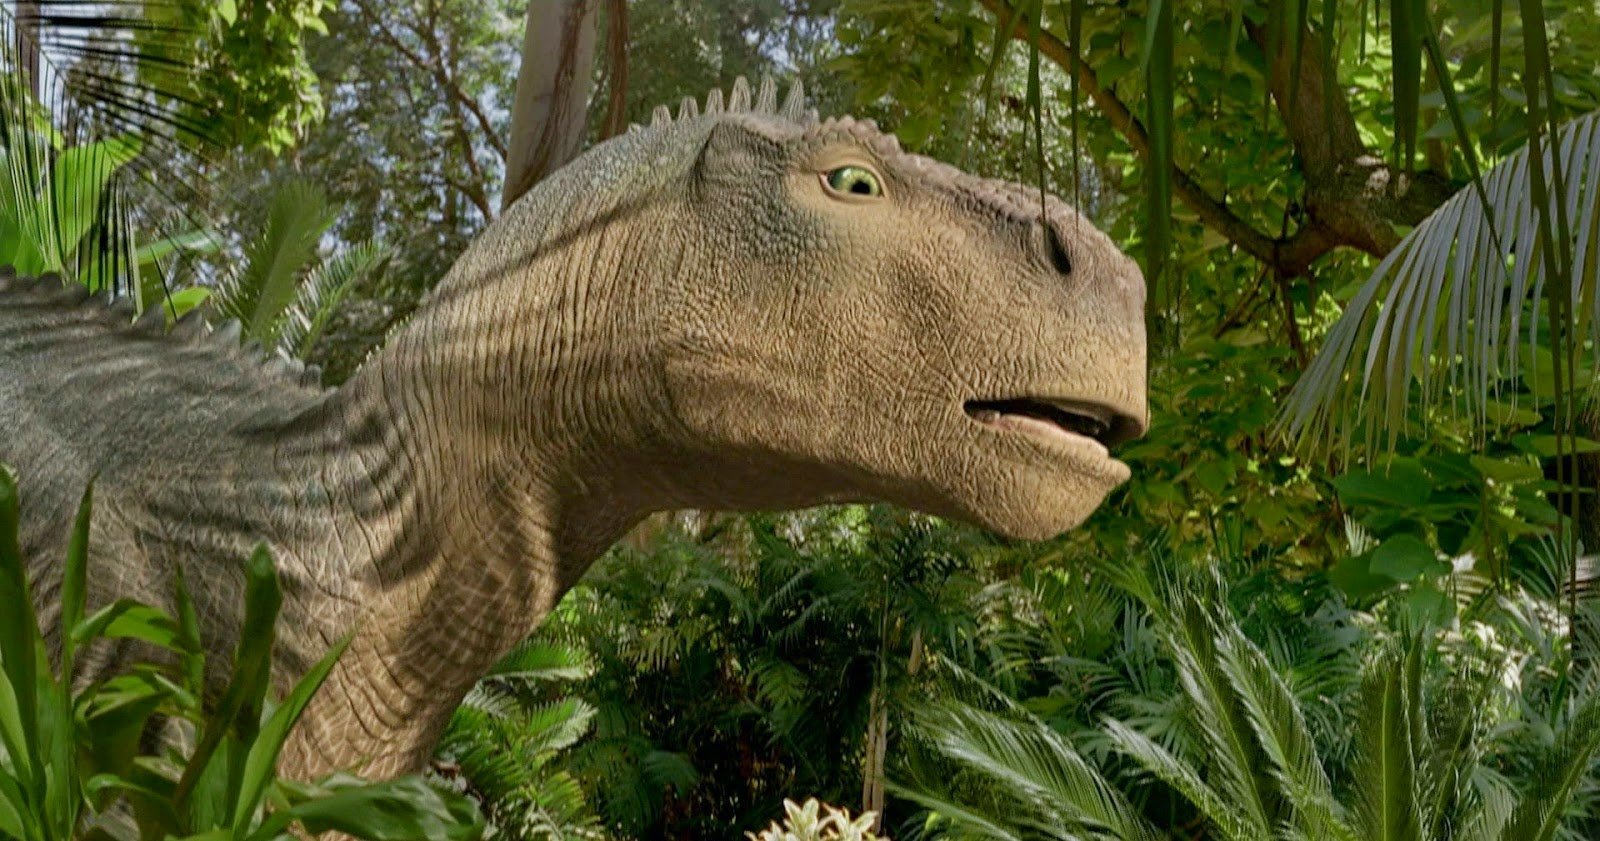 En subjektivt ful dinosaurie i Disneys film Dinosaur